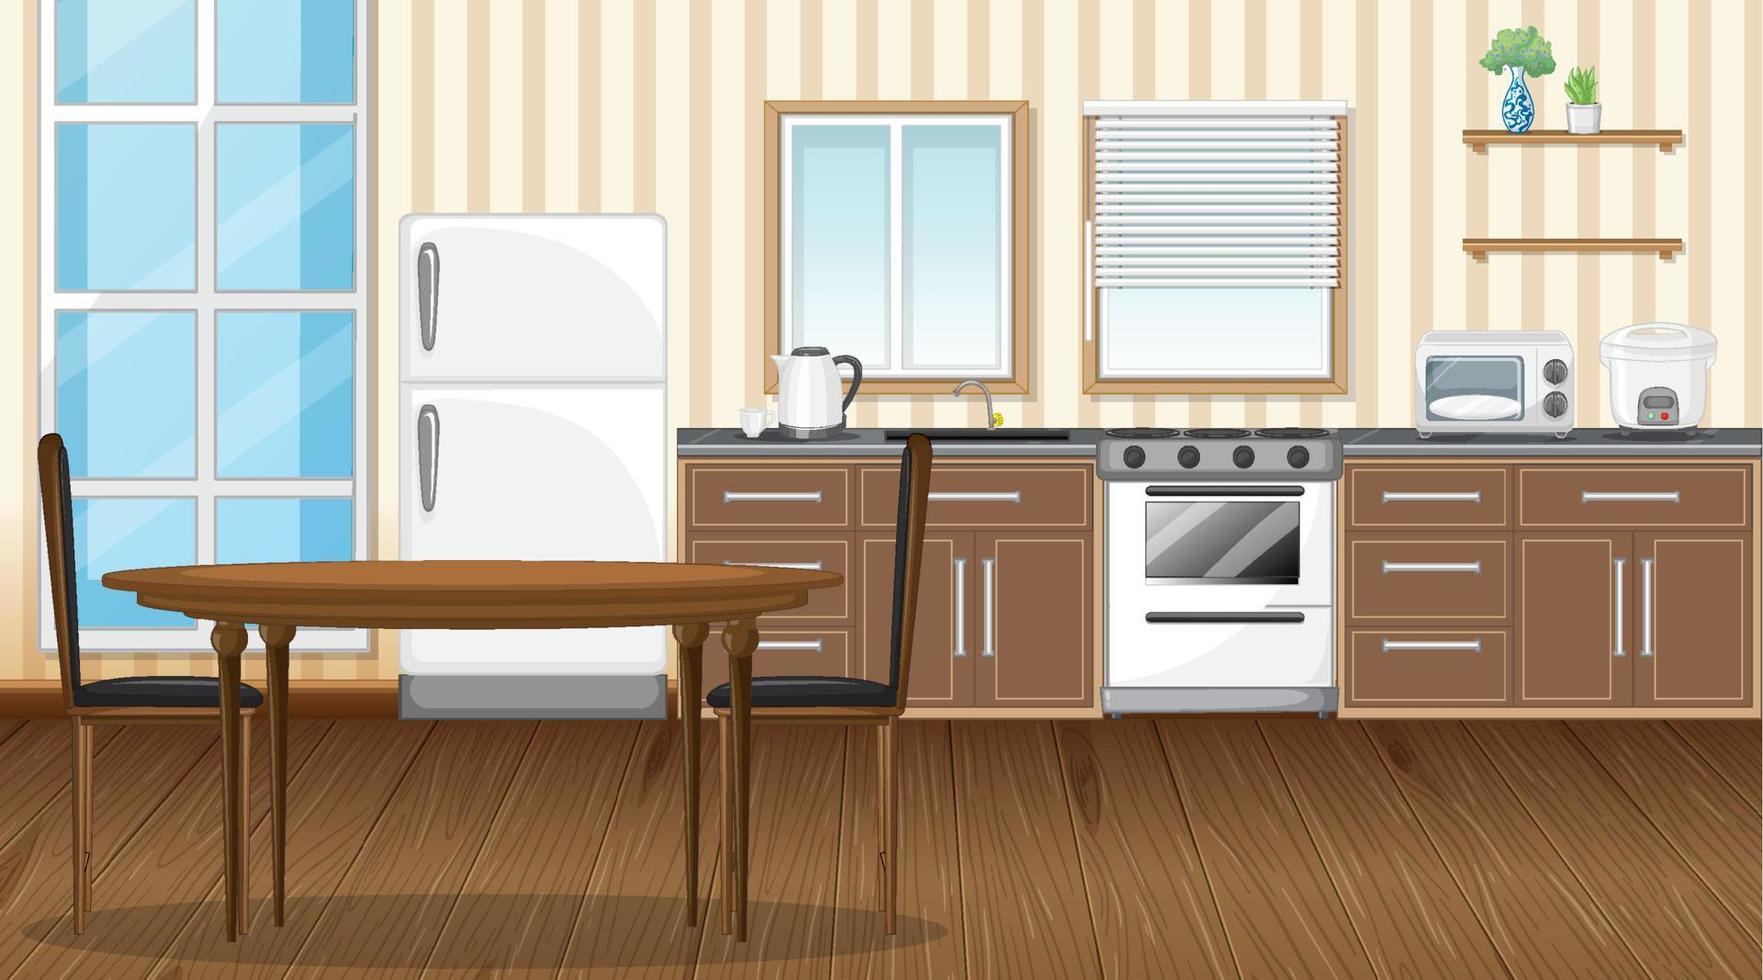 Comedor con diseño de interiores de cocina. vector